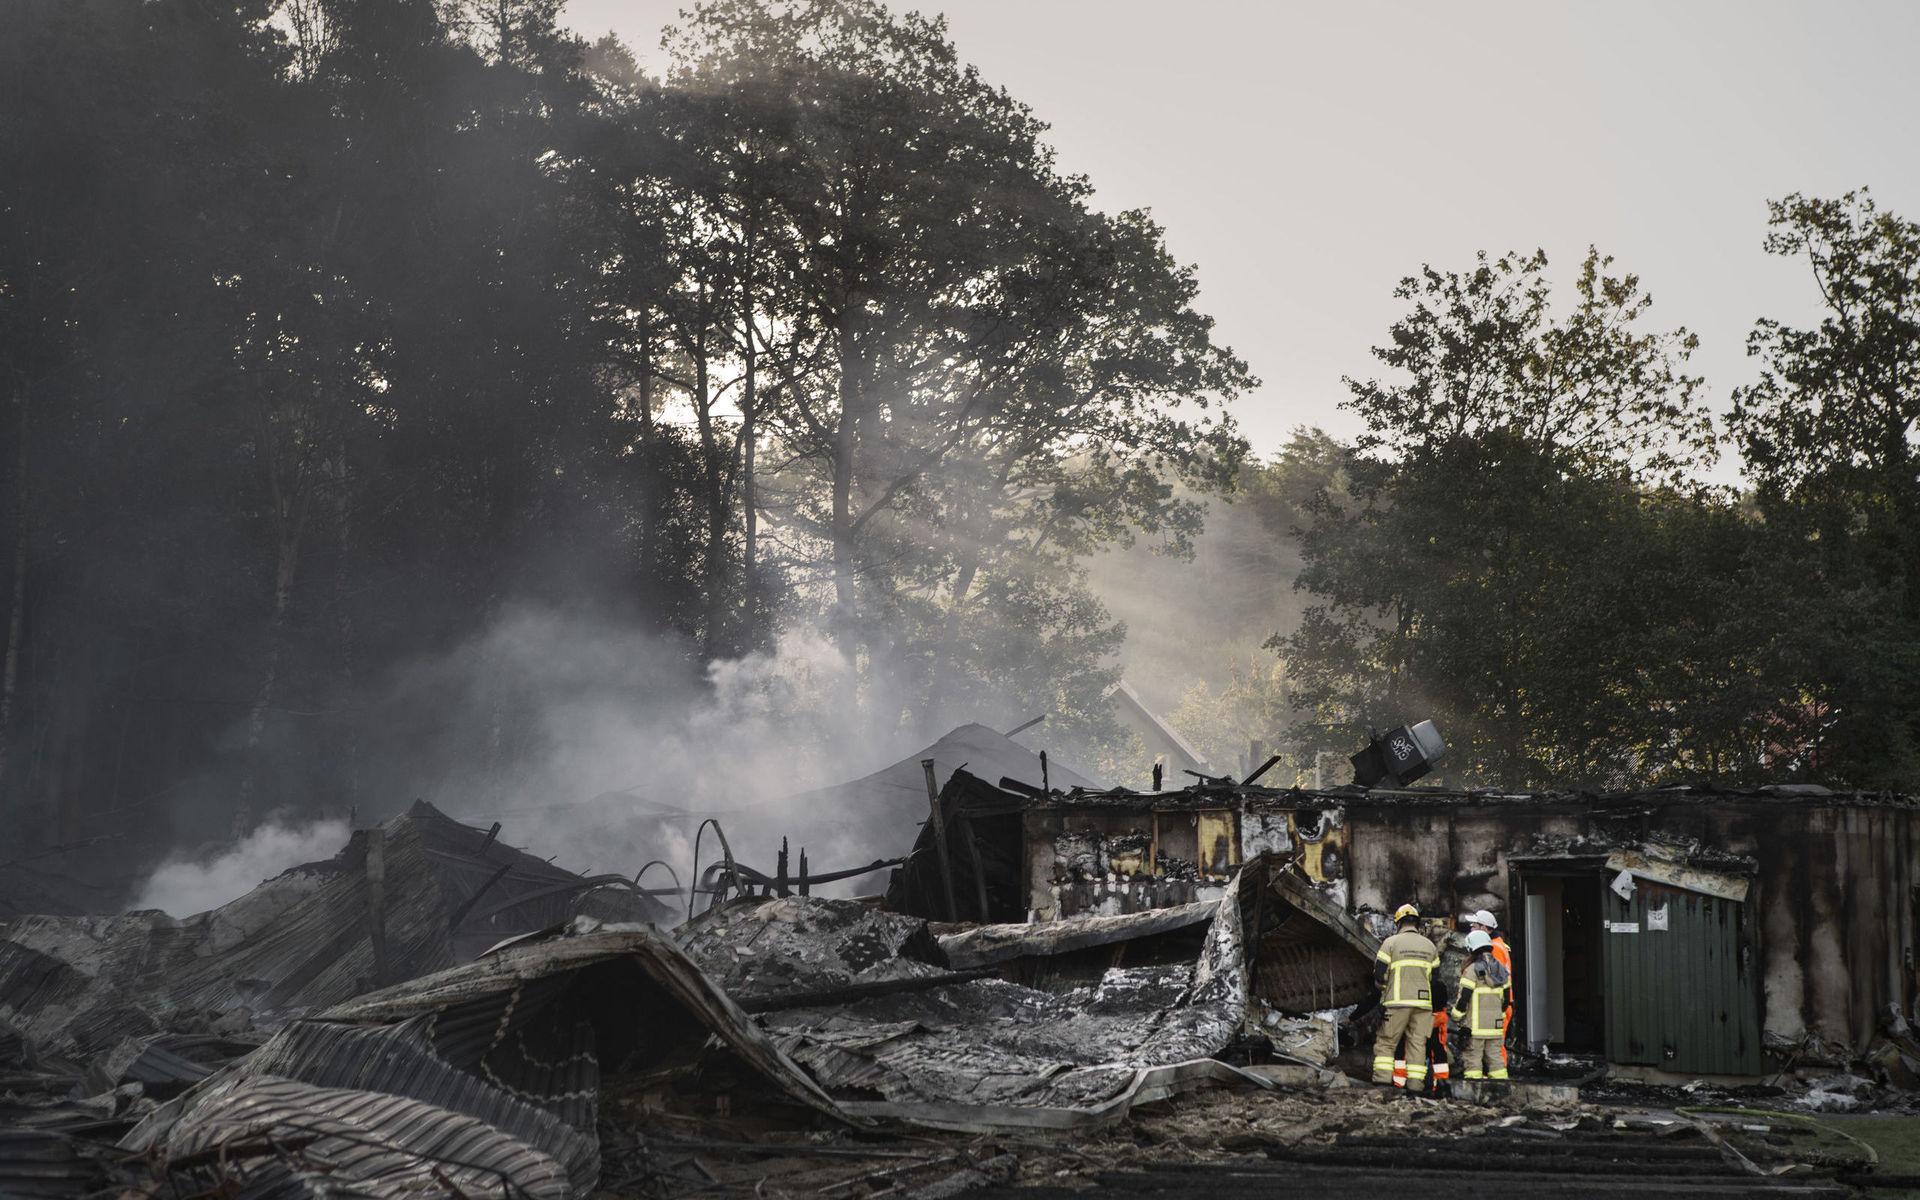 Slottsskogshallen har kollapsat efter den kraftiga branden som startade under söndagskvällen. 